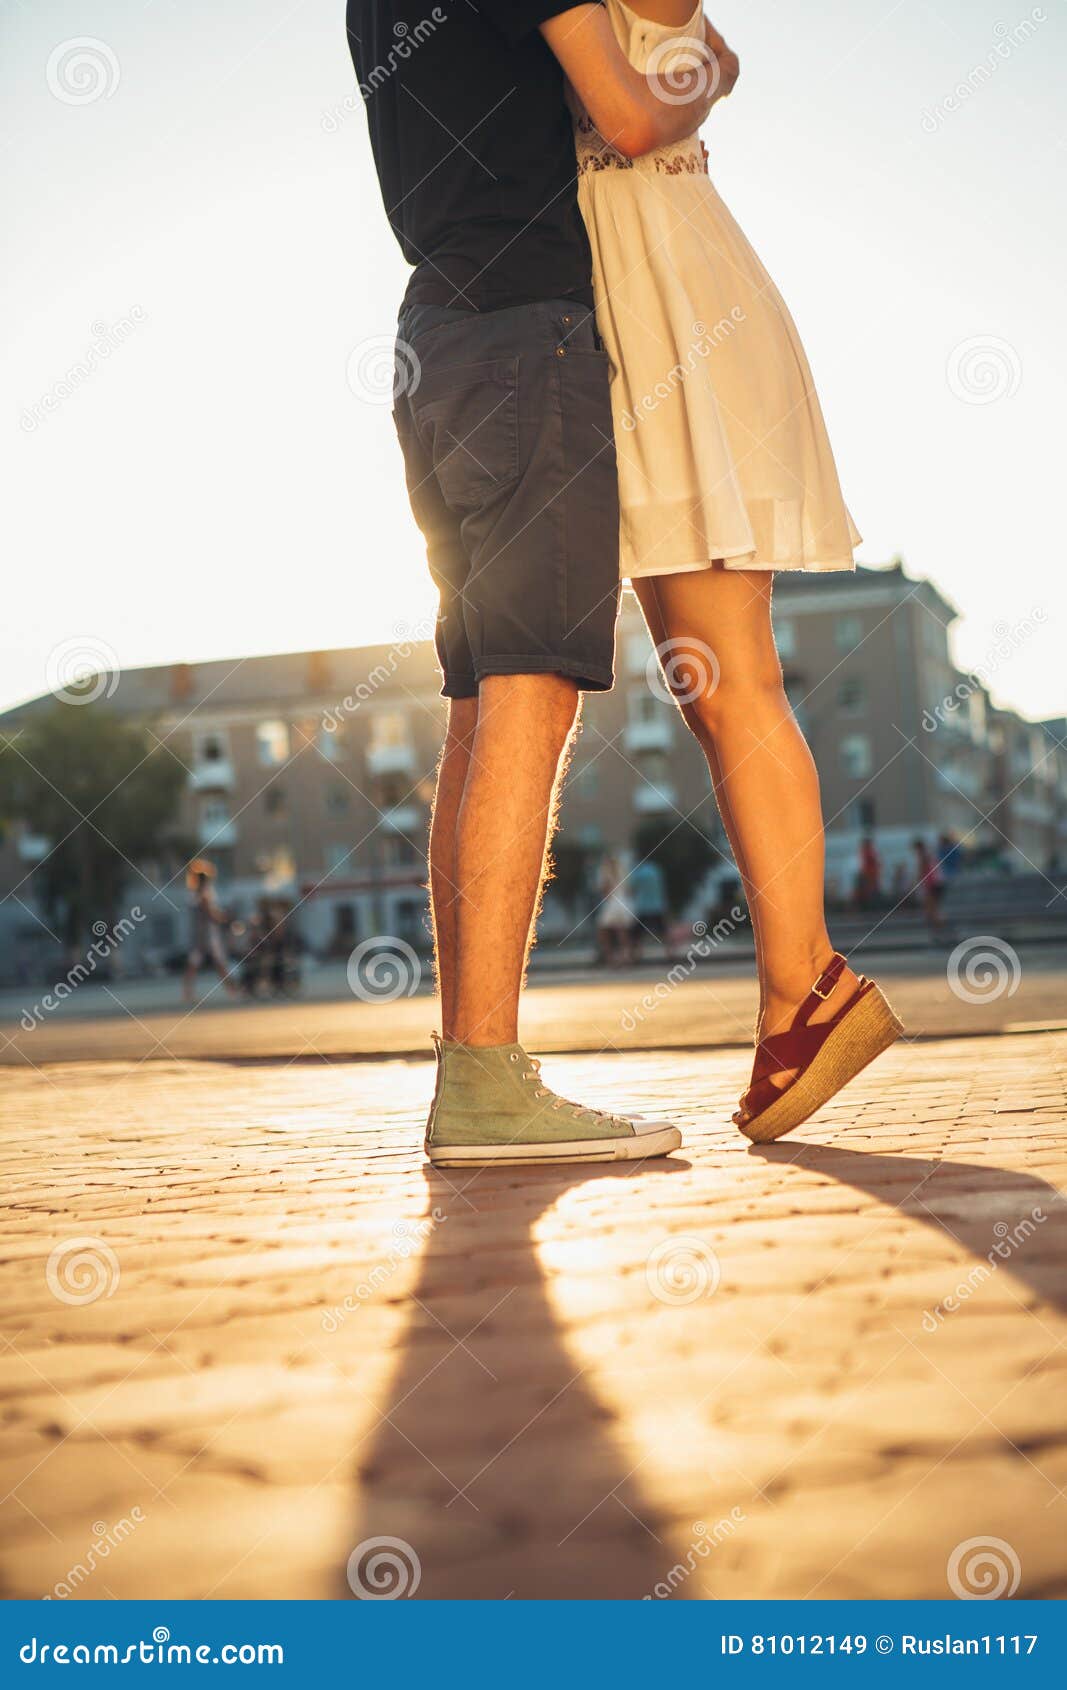 Девушка обнимает ногу. Девушка на цыпочках с парнем. Поцелуй на цыпочках. Девушка на носочках с парнем. Девушка обнимает мужчину ногами.